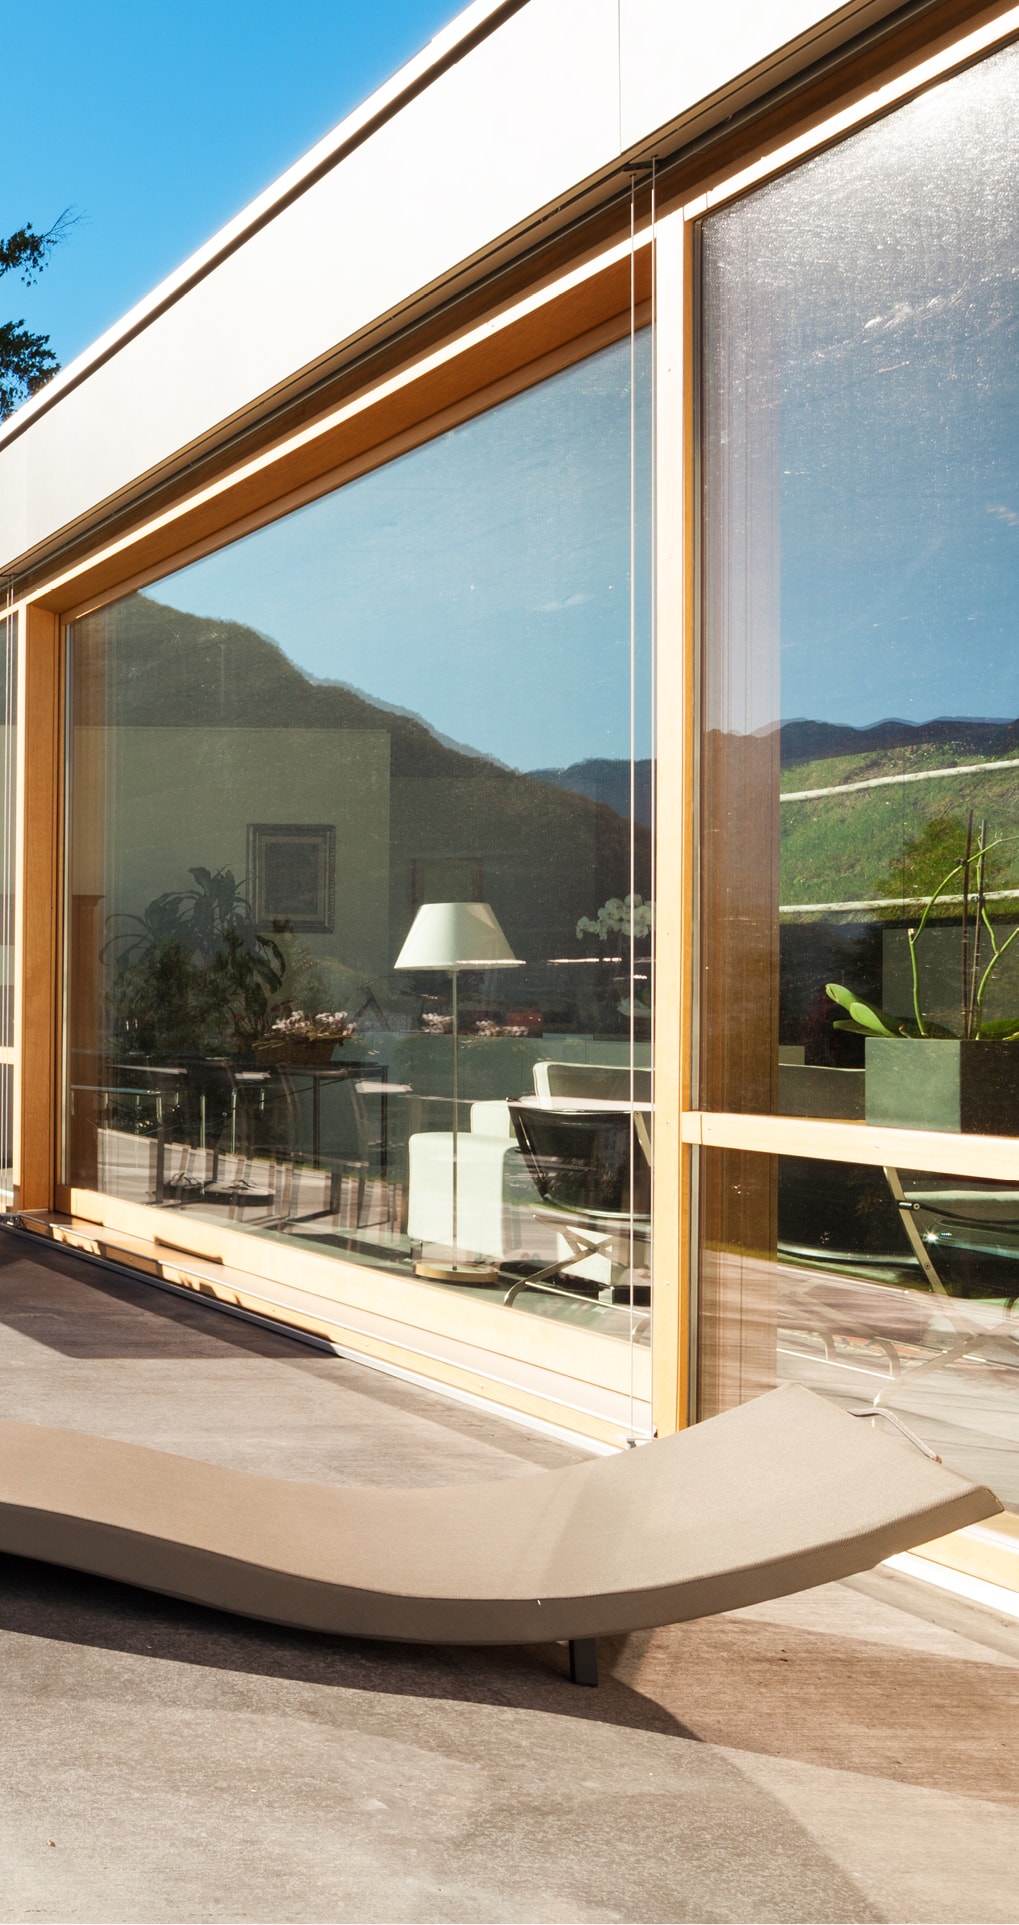 Großflächige Innovato+ Holz-Alu Fenster von Strussnig von außen